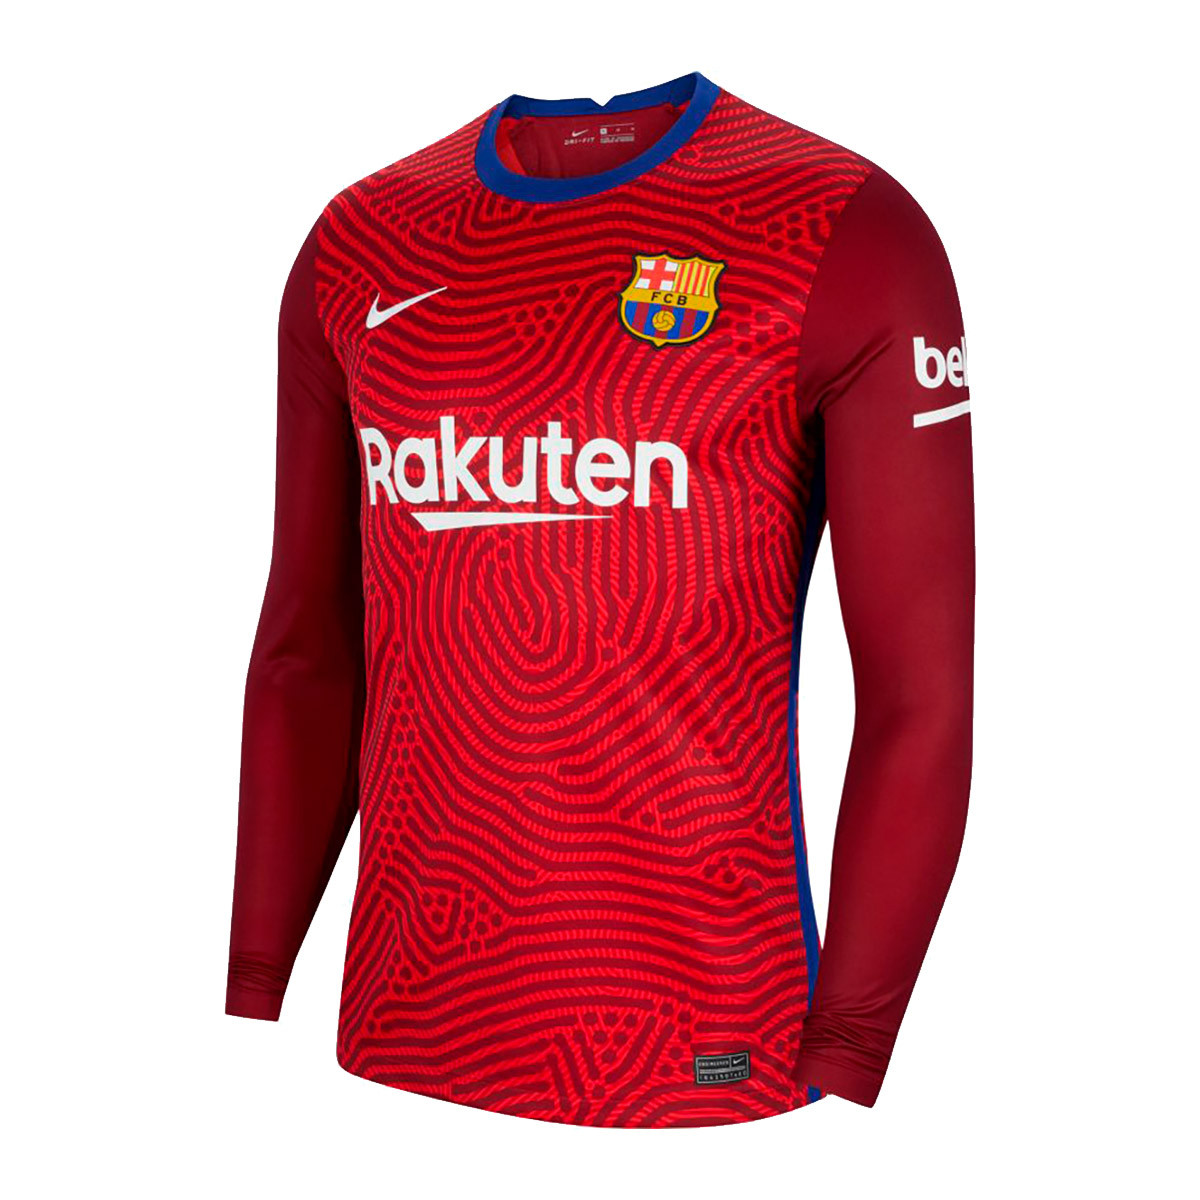 Buy > nike camiseta barcelona > in stock